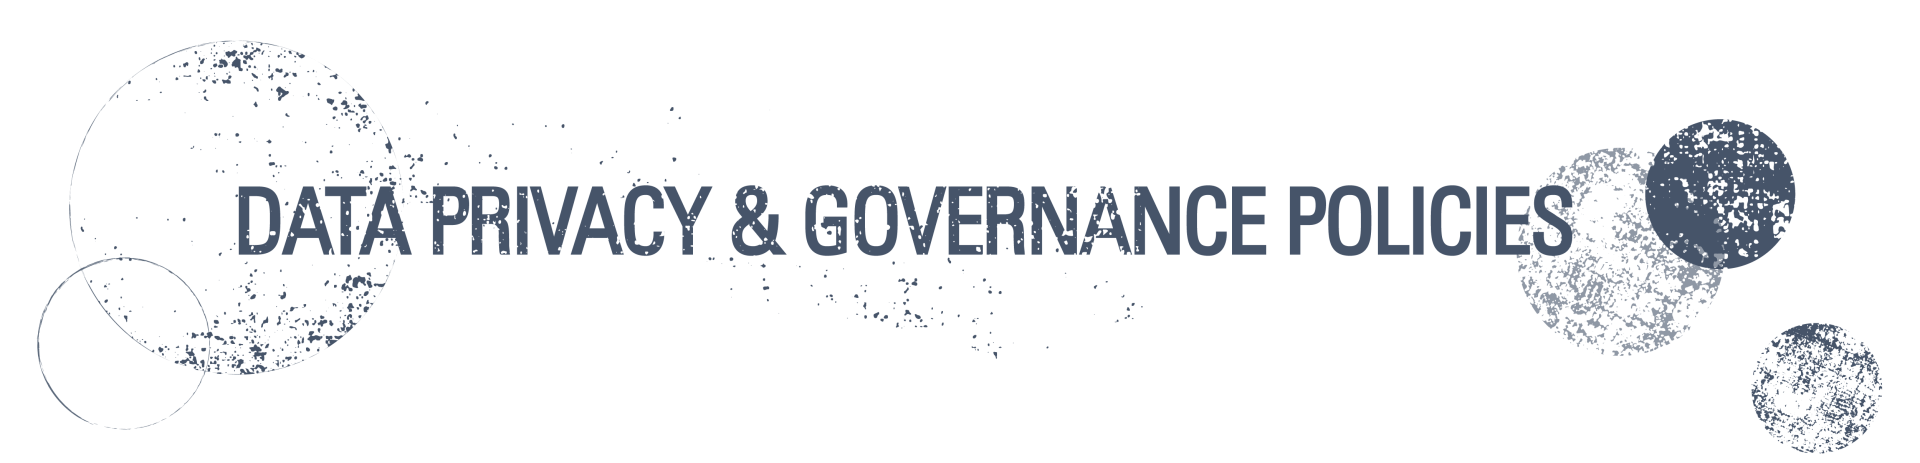 Data privacy & governance policies